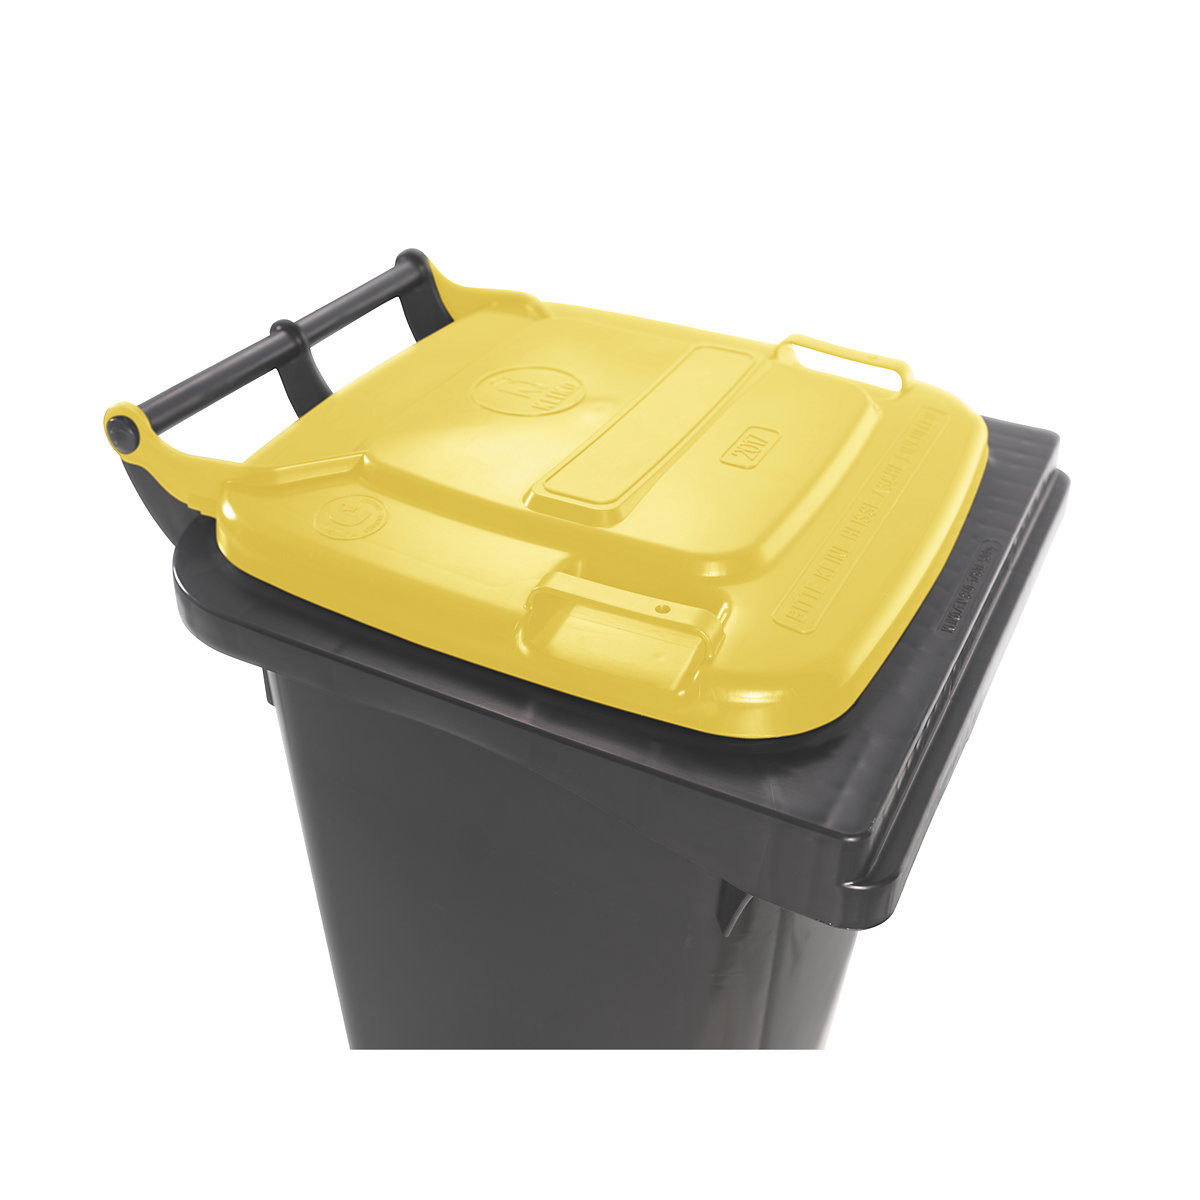 Contentor de lixo conforme a norma DIN EN 840 (Imagem do produto 3)-2